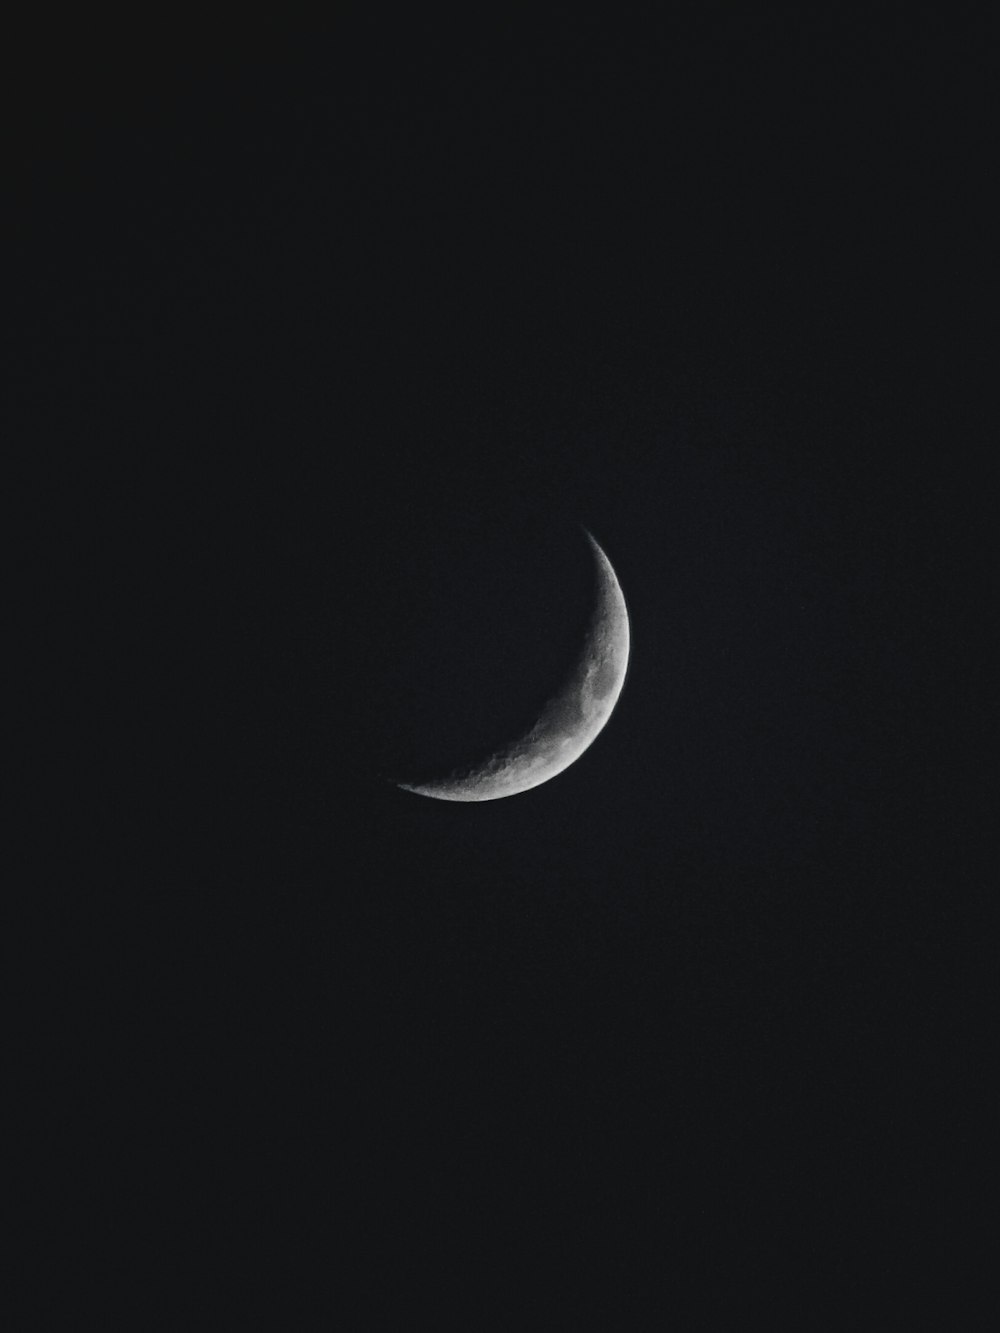 Una mezza luna è vista nel cielo scuro